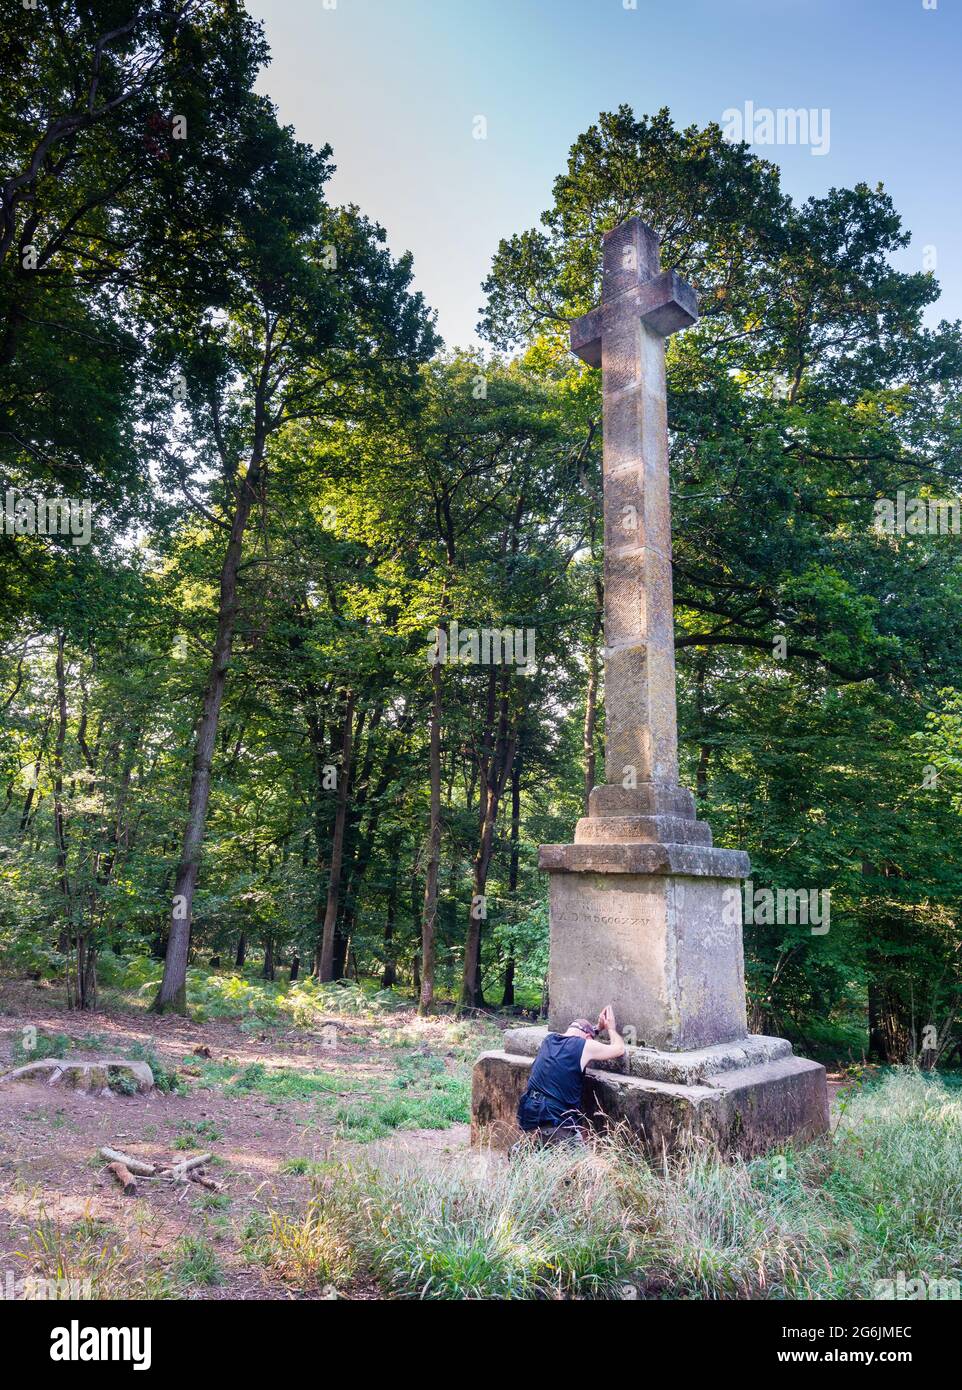 Un monument classé de deuxième catégorie, une croix de pierre érigée en 1825 dans un défrichement des bois et dédiée au comte Athelwold de Wherewell qui en 963 était kille Banque D'Images